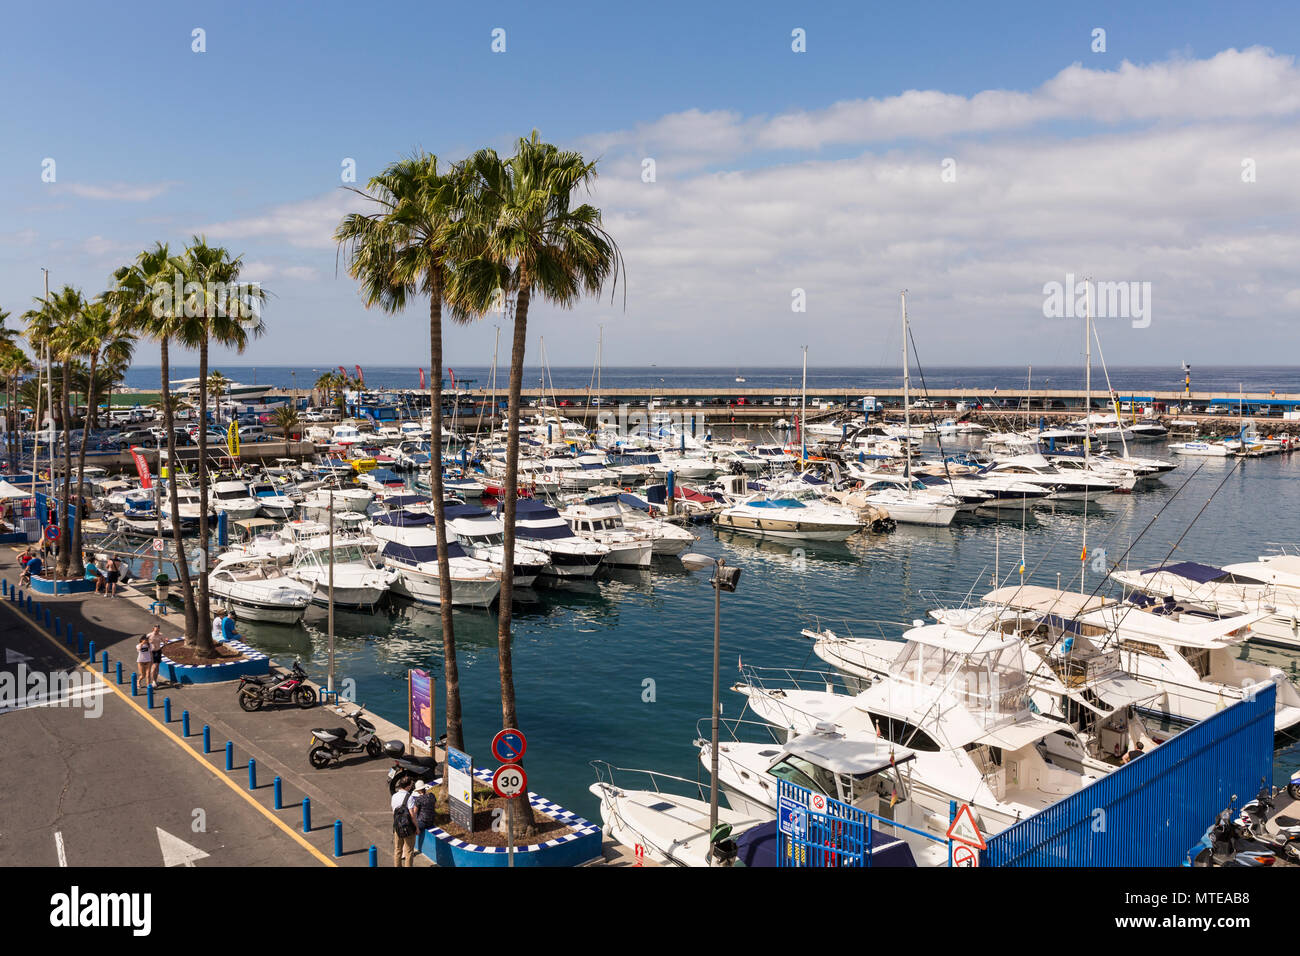 Barcos y amarres en el puerto deportivo de Puerto Colón, Playa de Las  Americas, Tenerife, Islas Canarias, España Fotografía de stock - Alamy